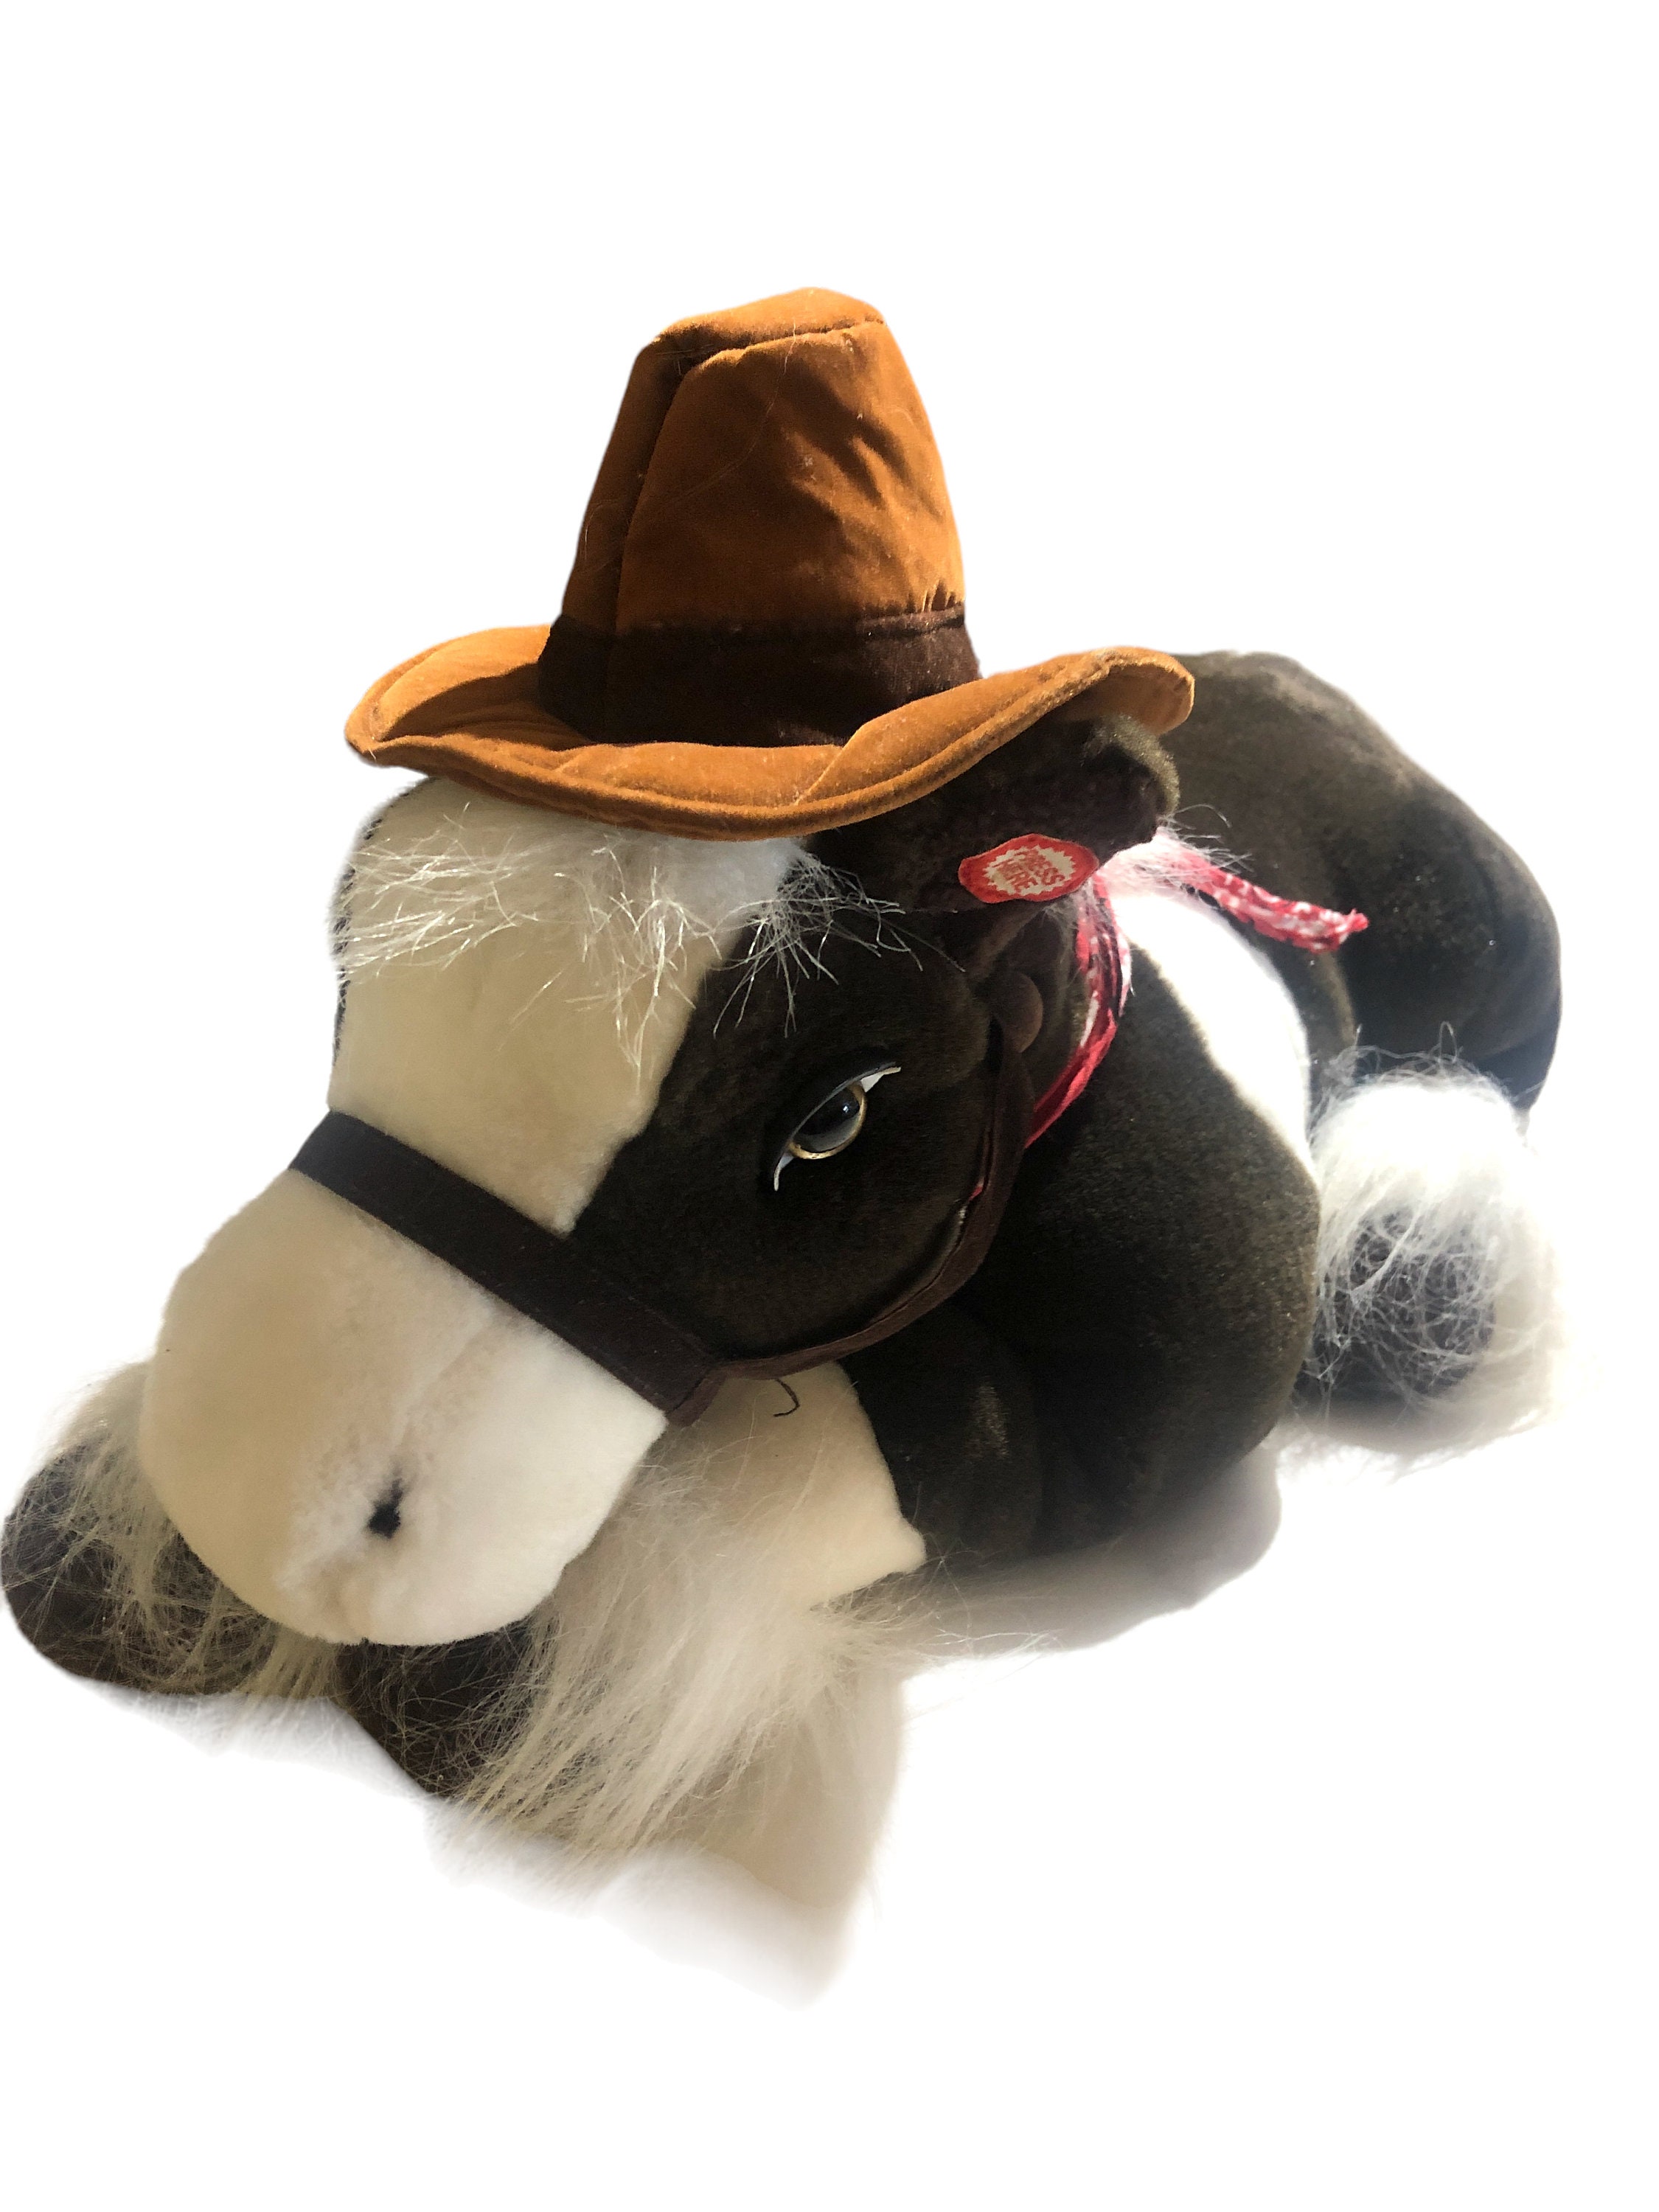 Plushie Singing Horse Pony Stuffed Animal pic